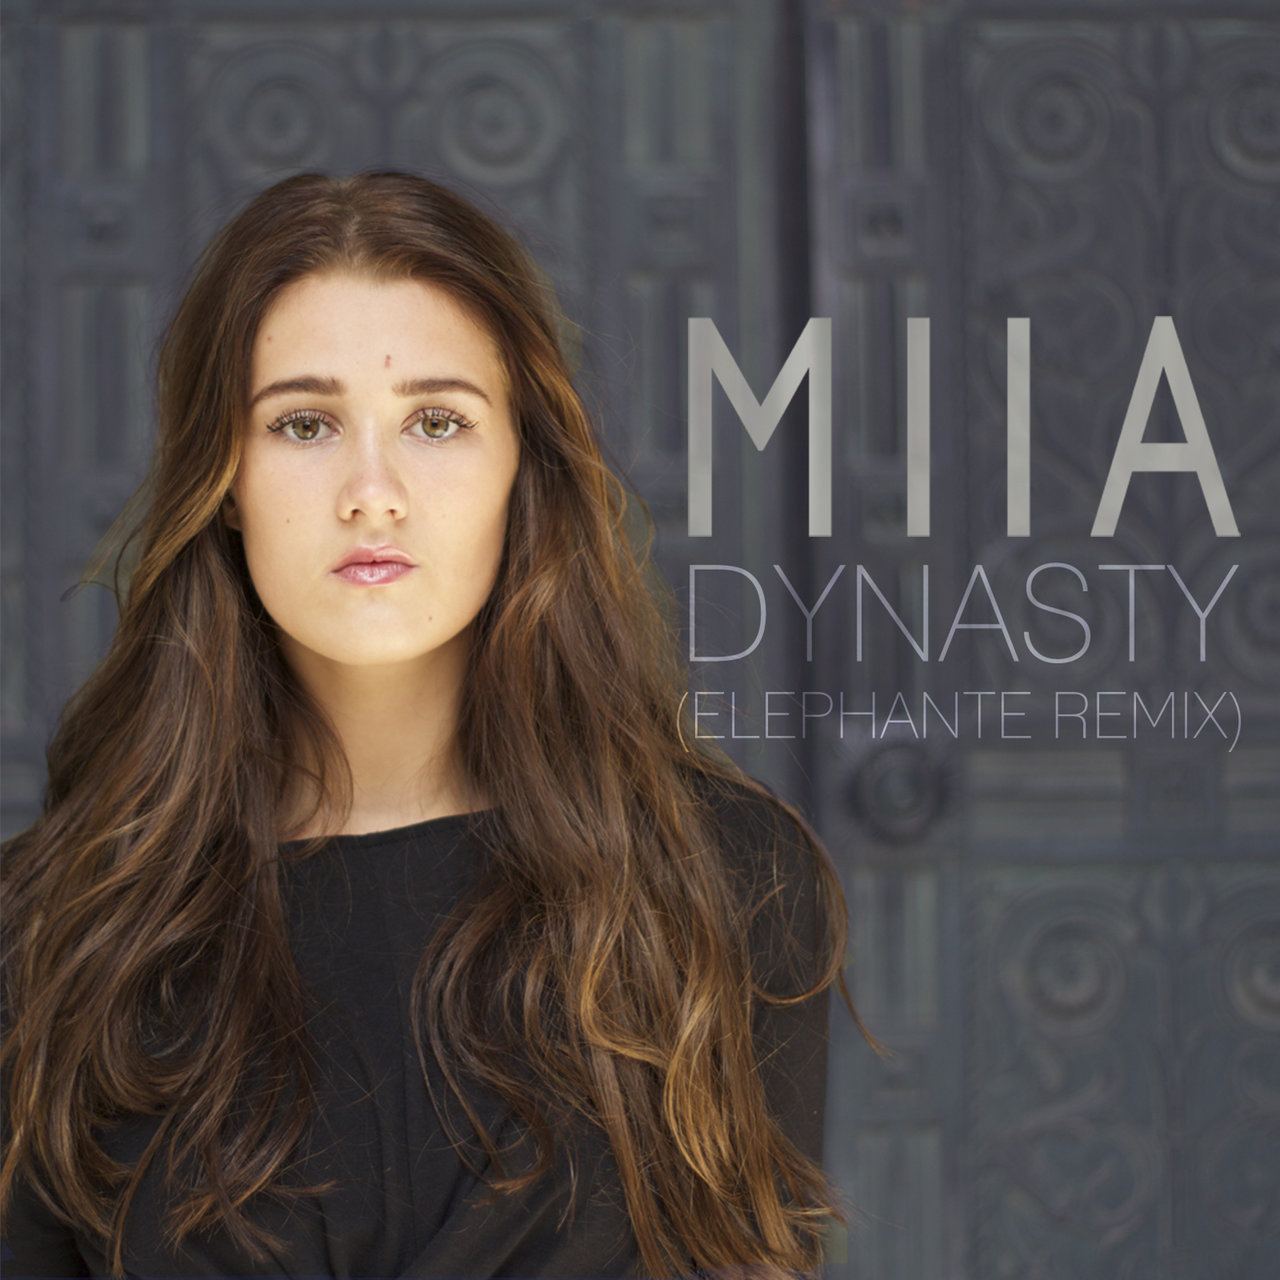 MIIA — Dynasty (Elephante Remix) cover artwork